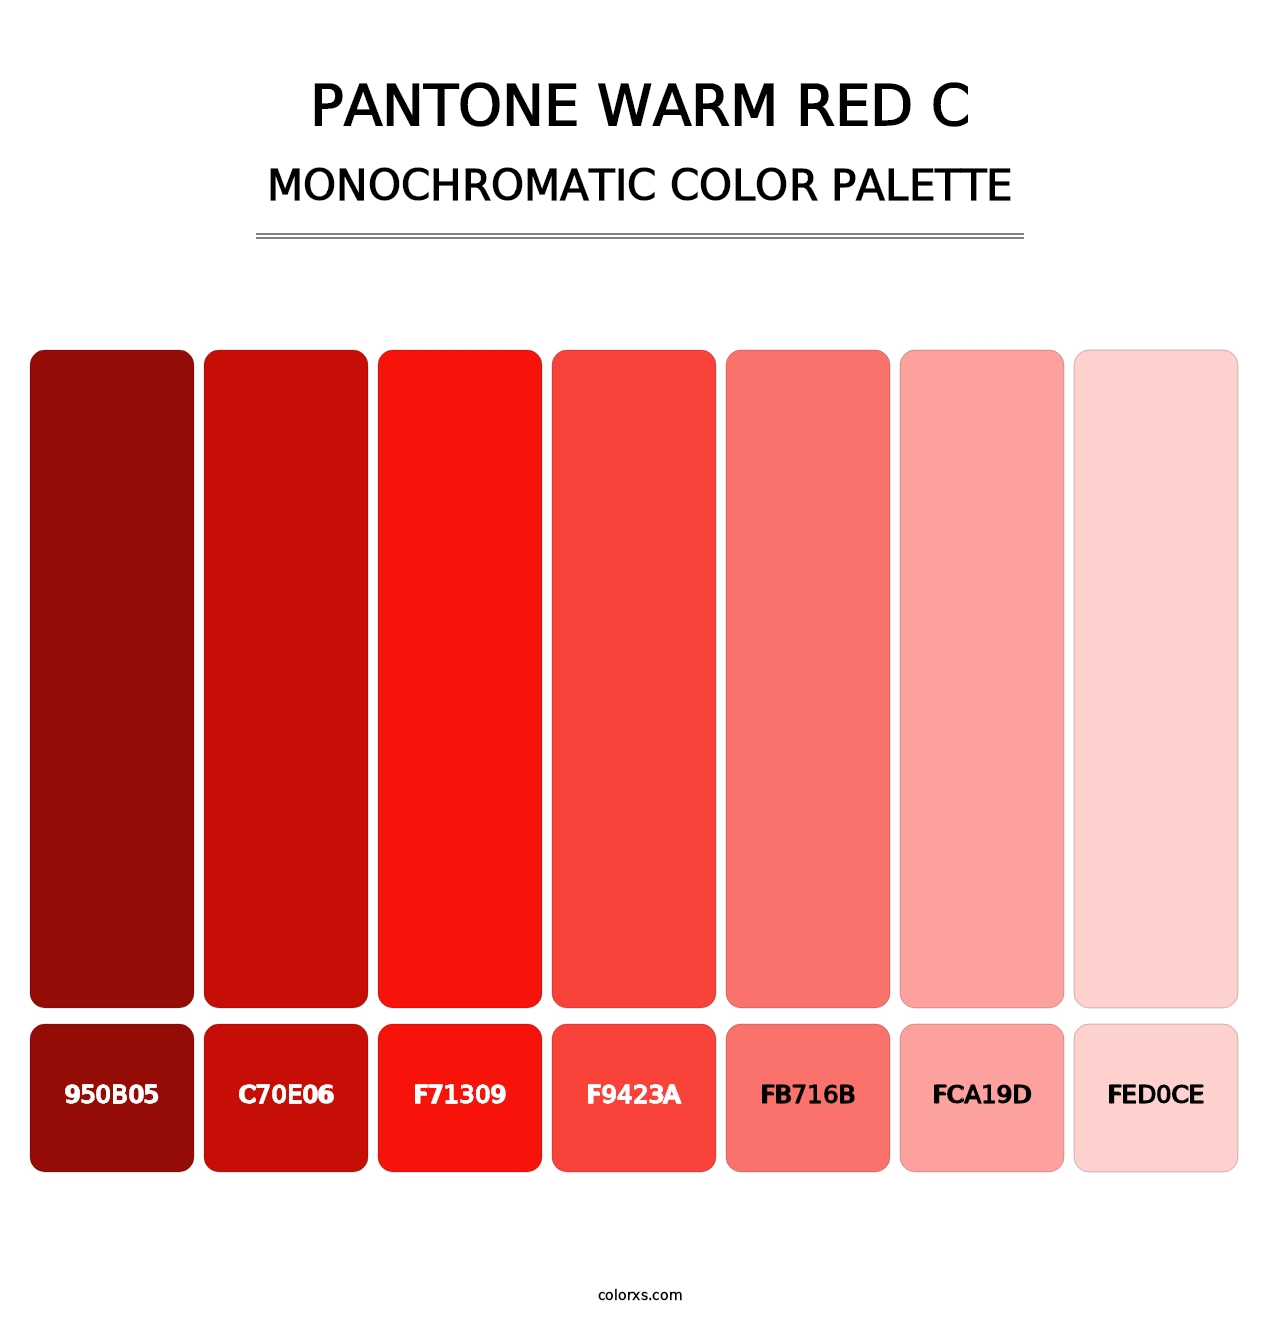 PANTONE Warm Red C - Monochromatic Color Palette